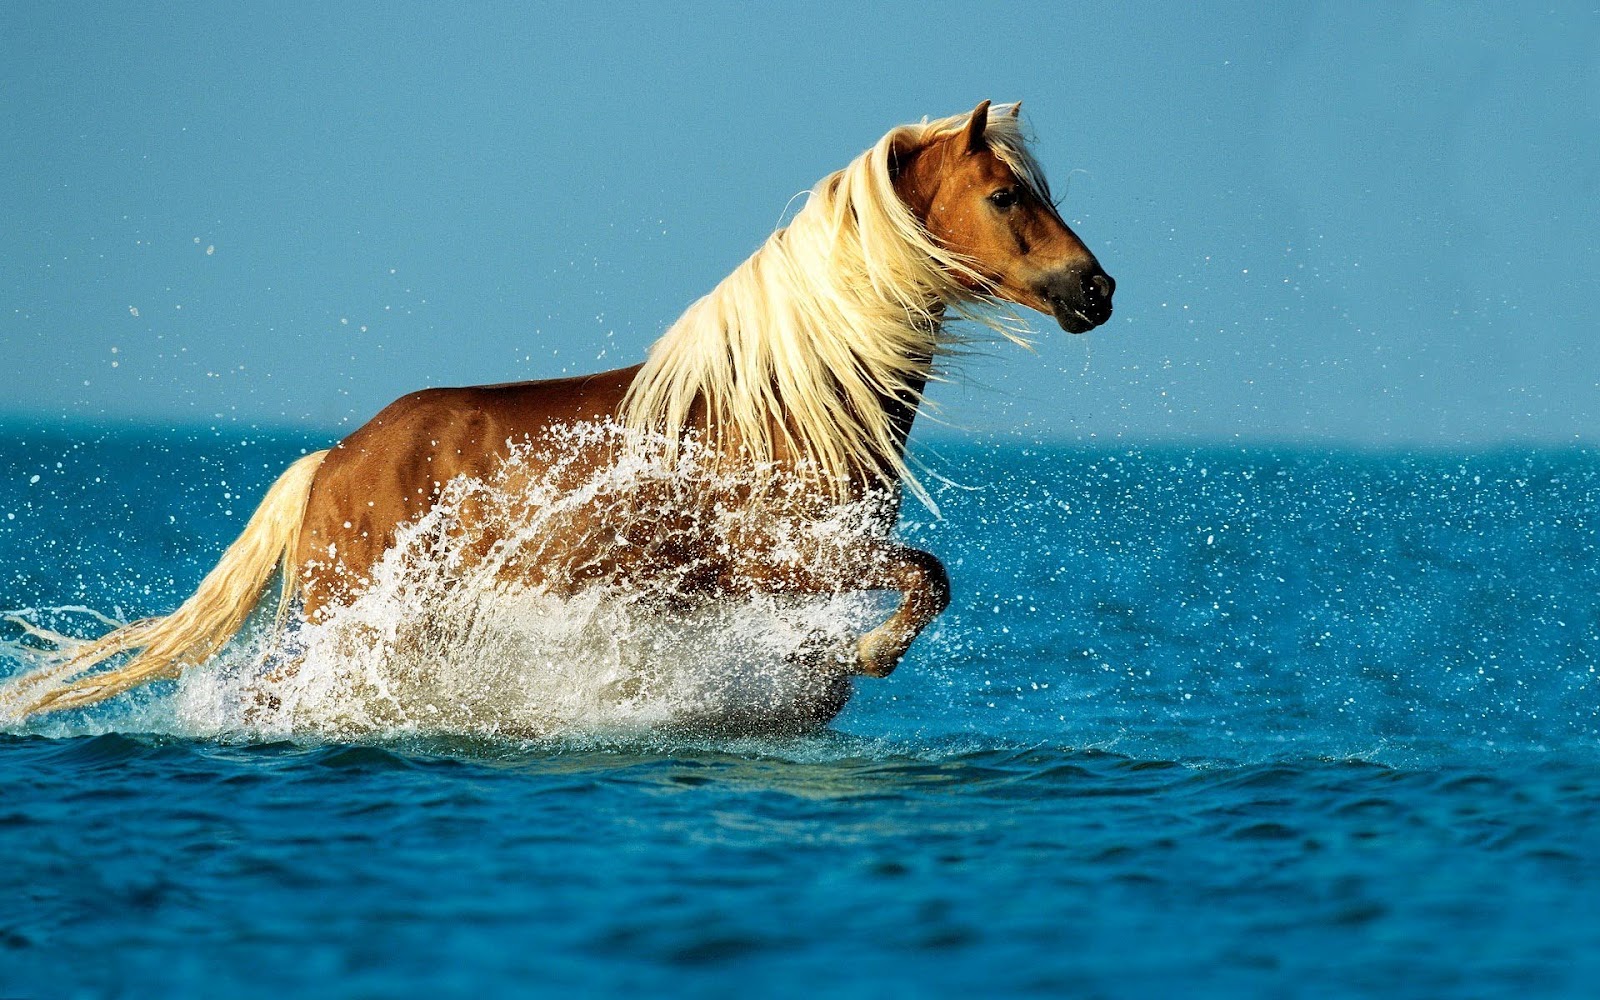 http://2.bp.blogspot.com/-68TXyBdX4bw/UBbrMYO-ZbI/AAAAAAAAD5I/mLYDt4PZQ9s/s1600/hd-paarden-achtergrond-met-een-paard-in-de-zee-hd-paard-wallpaper.jpg